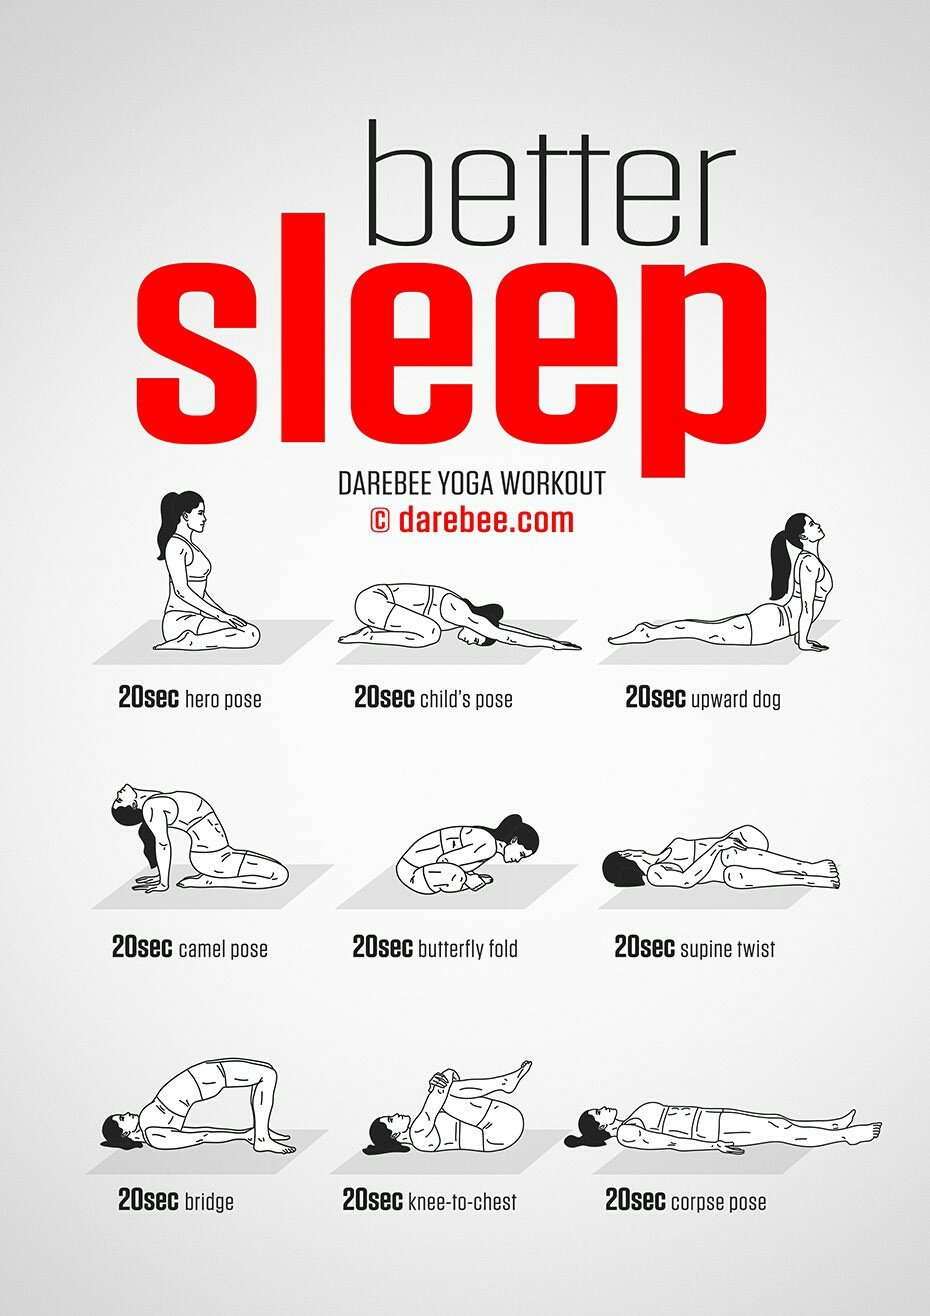 DAREBEE on X: NEW: Better Sleep Yoga Workout  # darebee #yoga #workout #fitness  / X